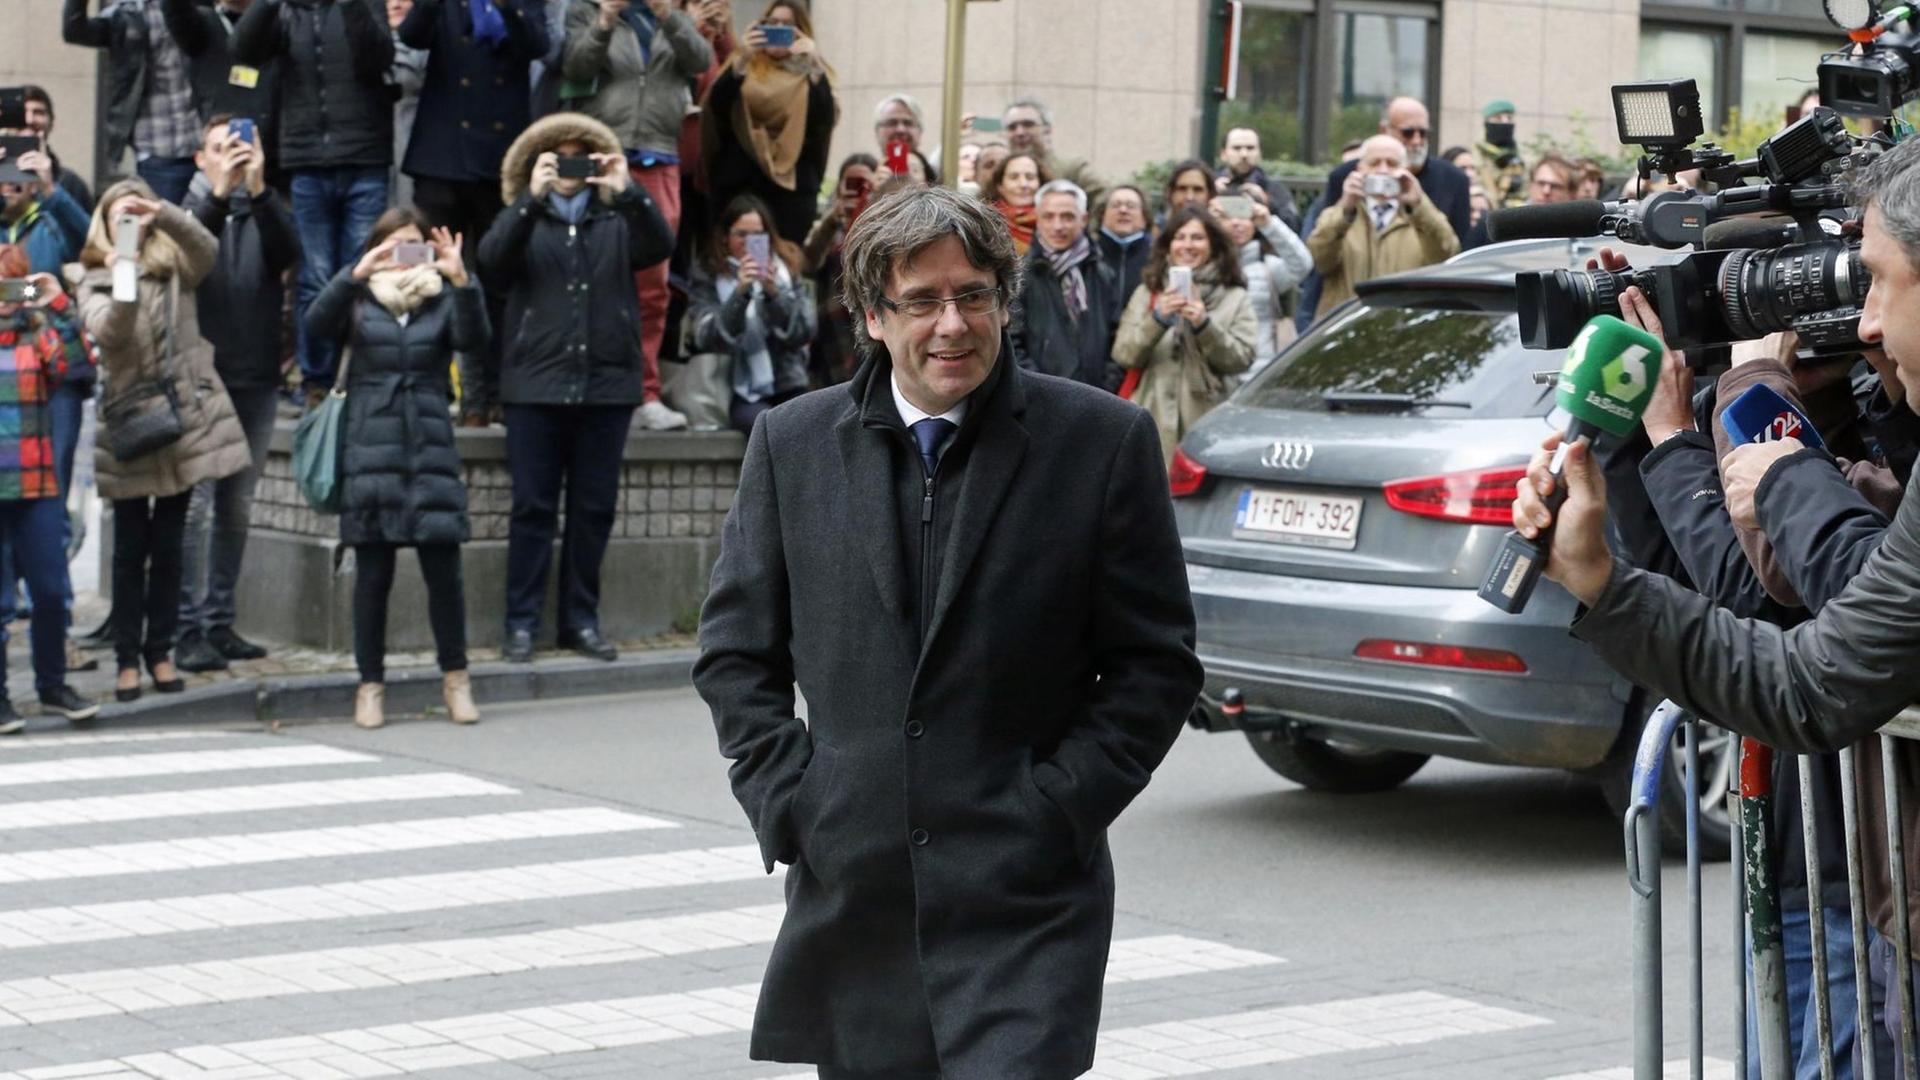 Der ehemalige Regierungschef Katalonien, Carles Puigdemont, auf dem Weg zu seiner Pressekonferenz in Brüssel (31.10.2017).